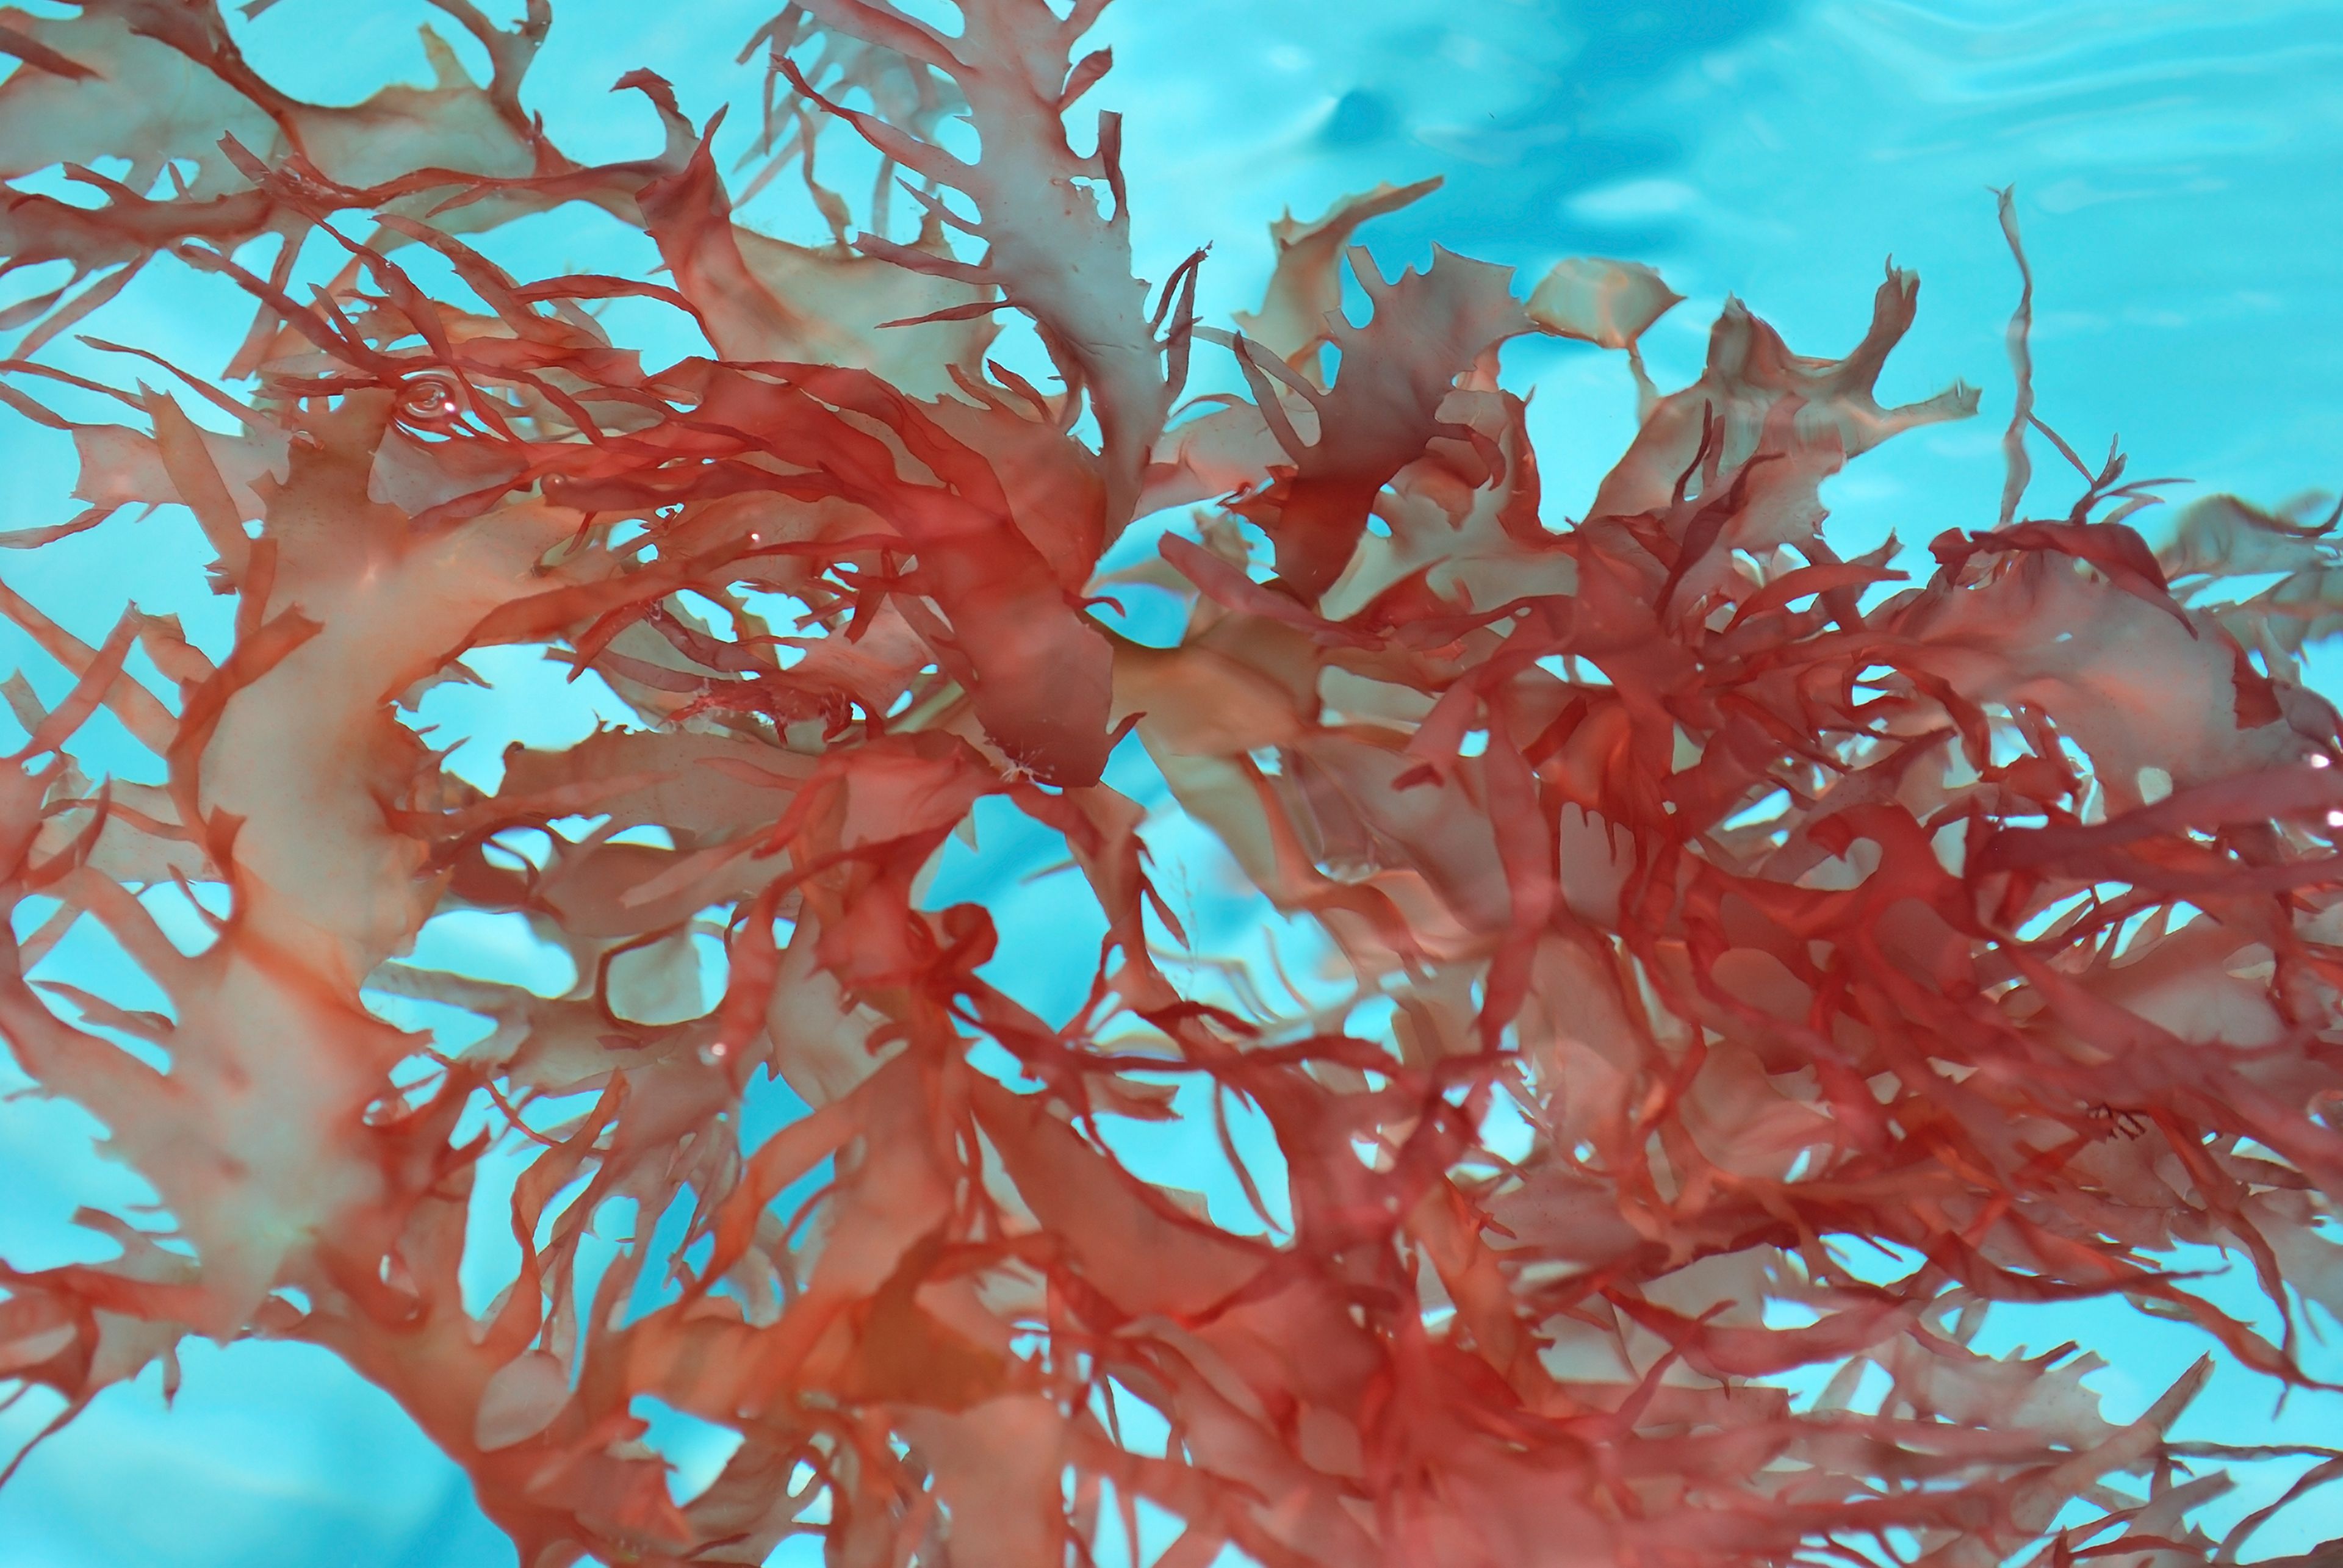 Poseidona utiliza las algas rojas para generar un ingrediente rico en proteína e idóneo para sustituir a la soja o al guisante en el mercado plant-based.